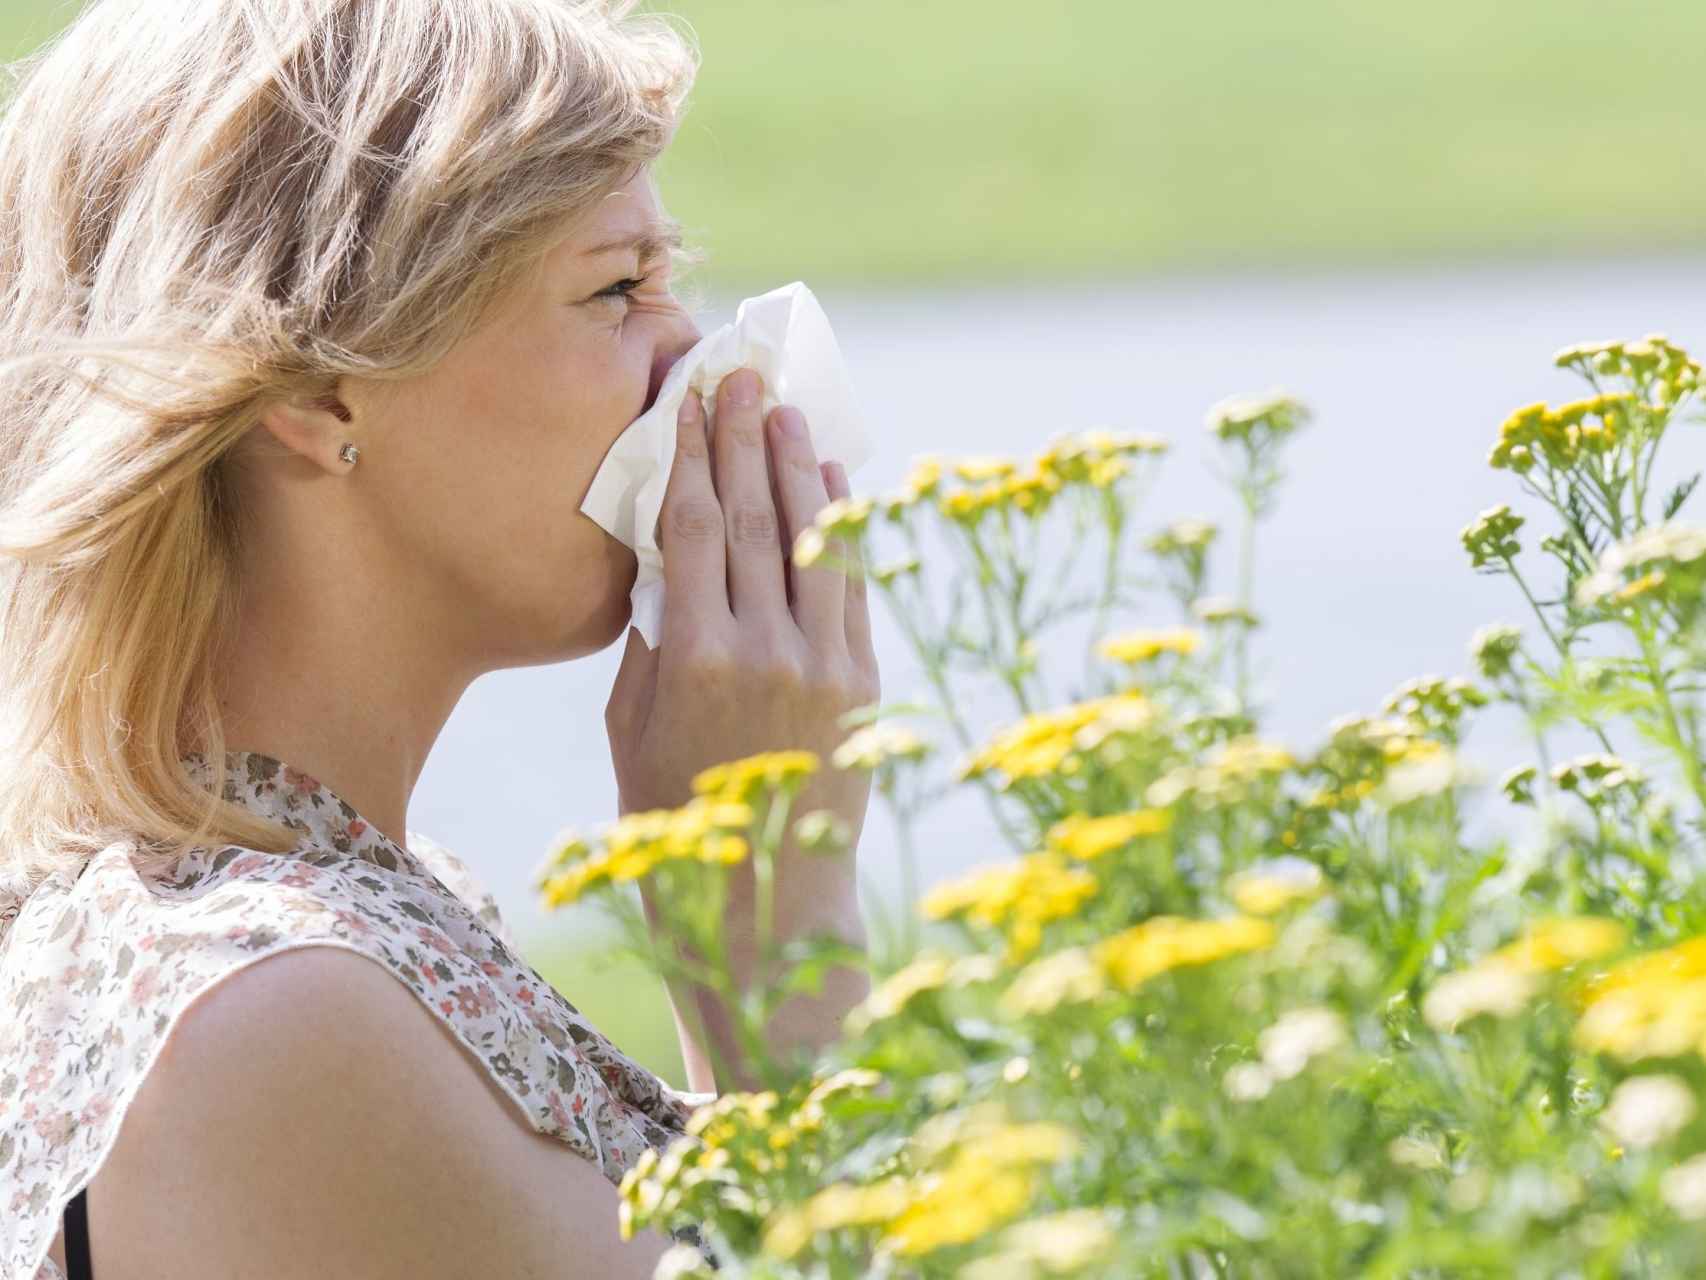 Los problemas respiratorios y alergias aumentan con el cambio climático